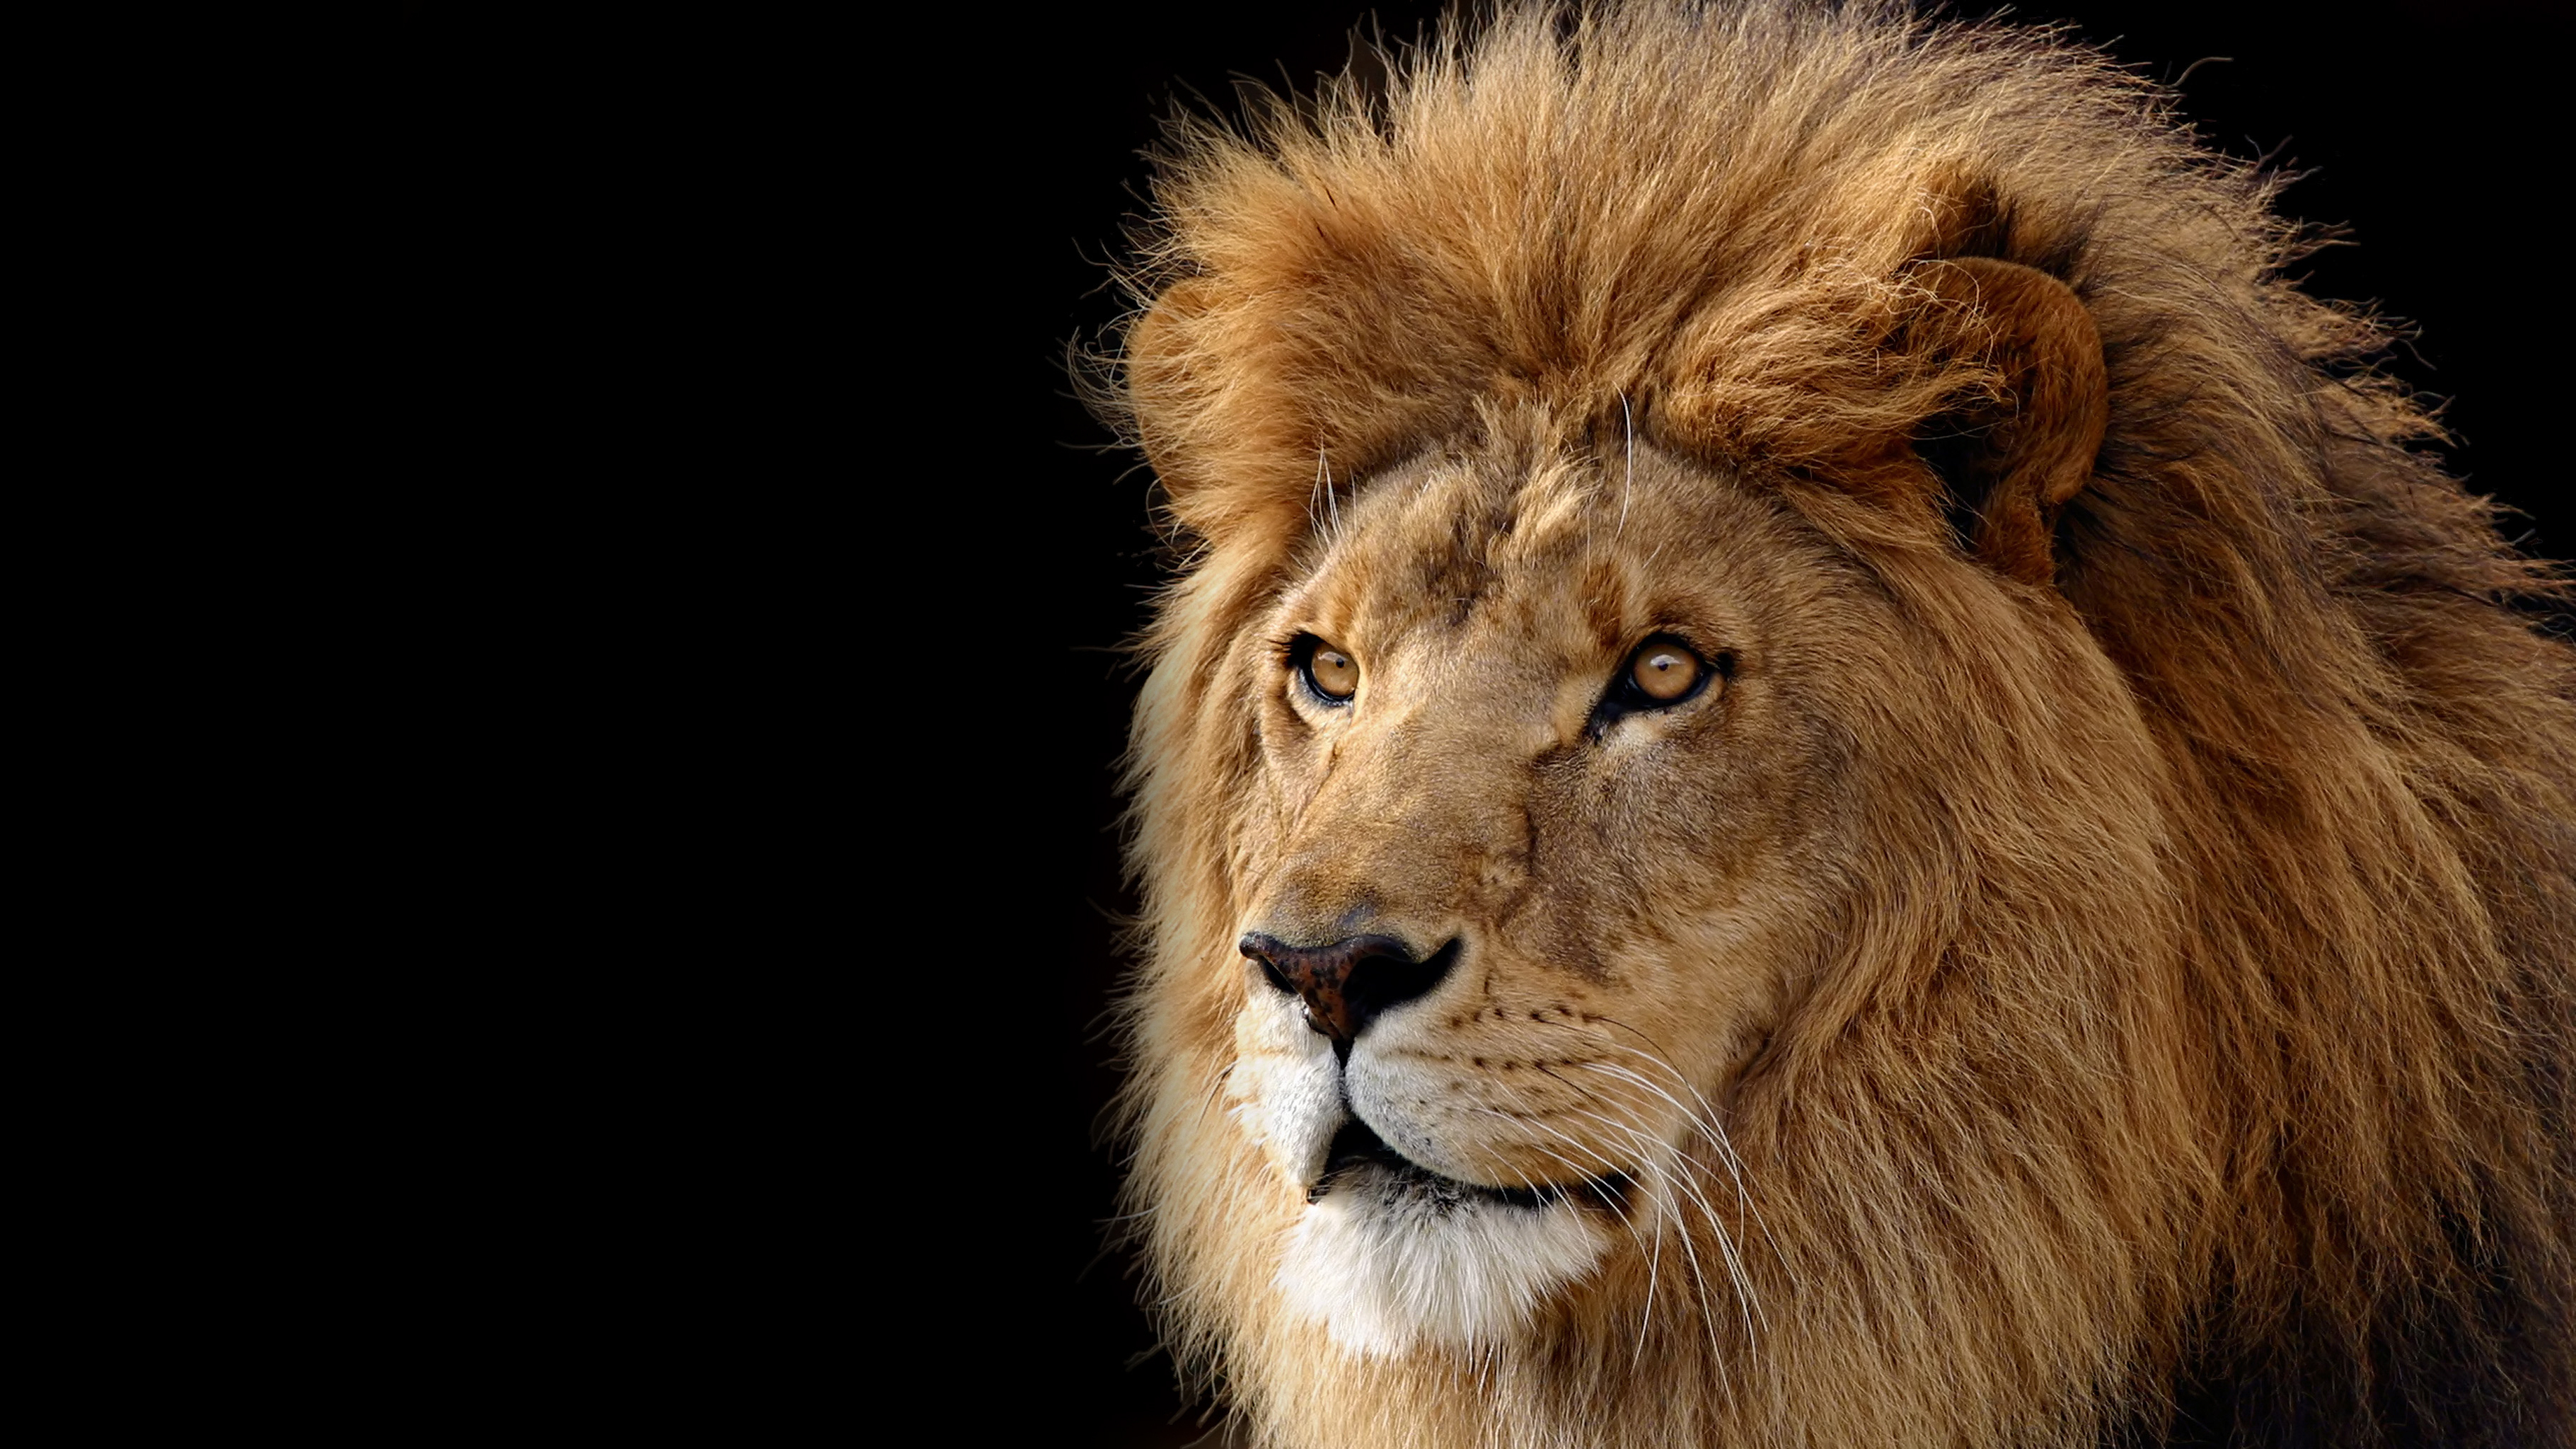 Fotos von Löwe Große Katze ein Tier 3641x2048 Löwen Tiere